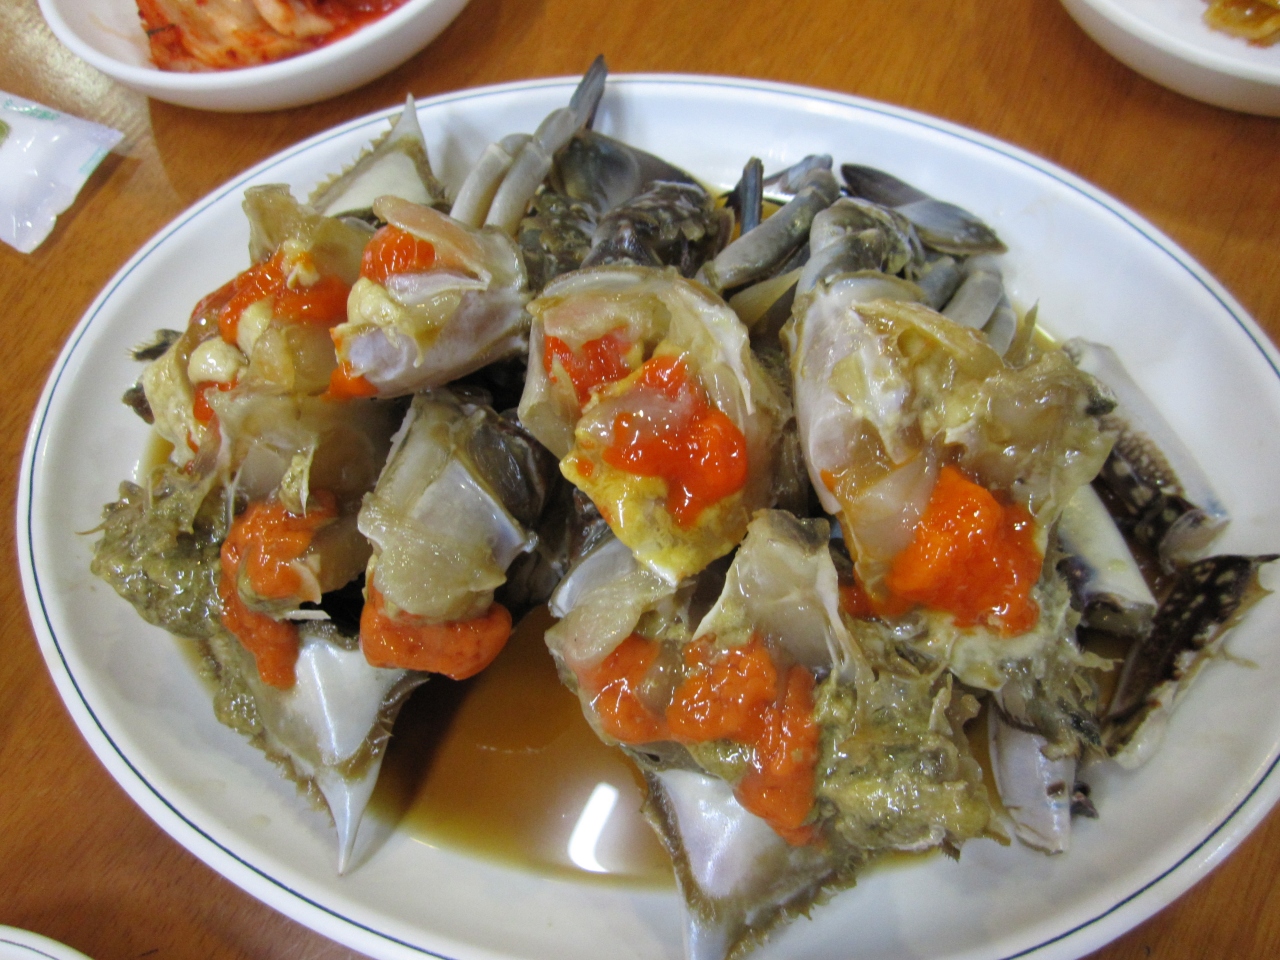 韓国で美味しいご飯が食べたいの ソウル 韓国 の旅行記 ブログ By Junoさん フォートラベル